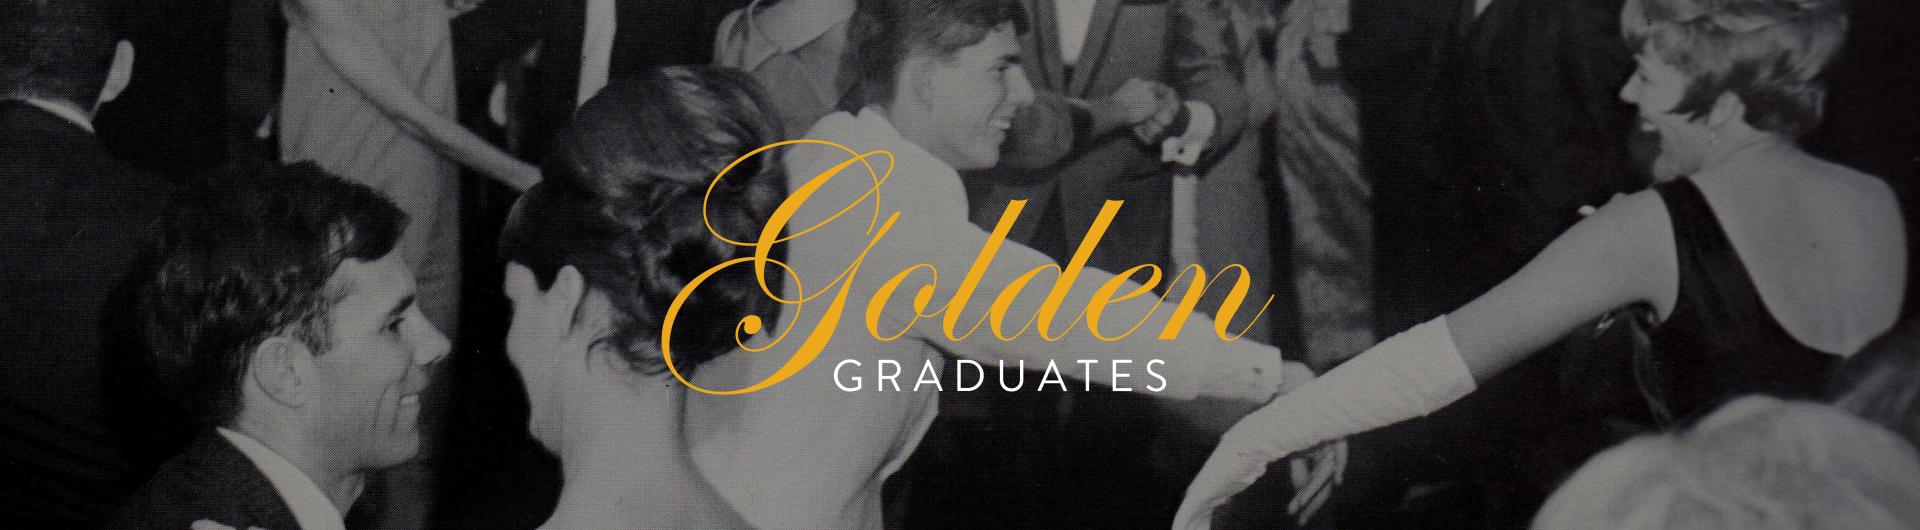 Golden Graduate Banner